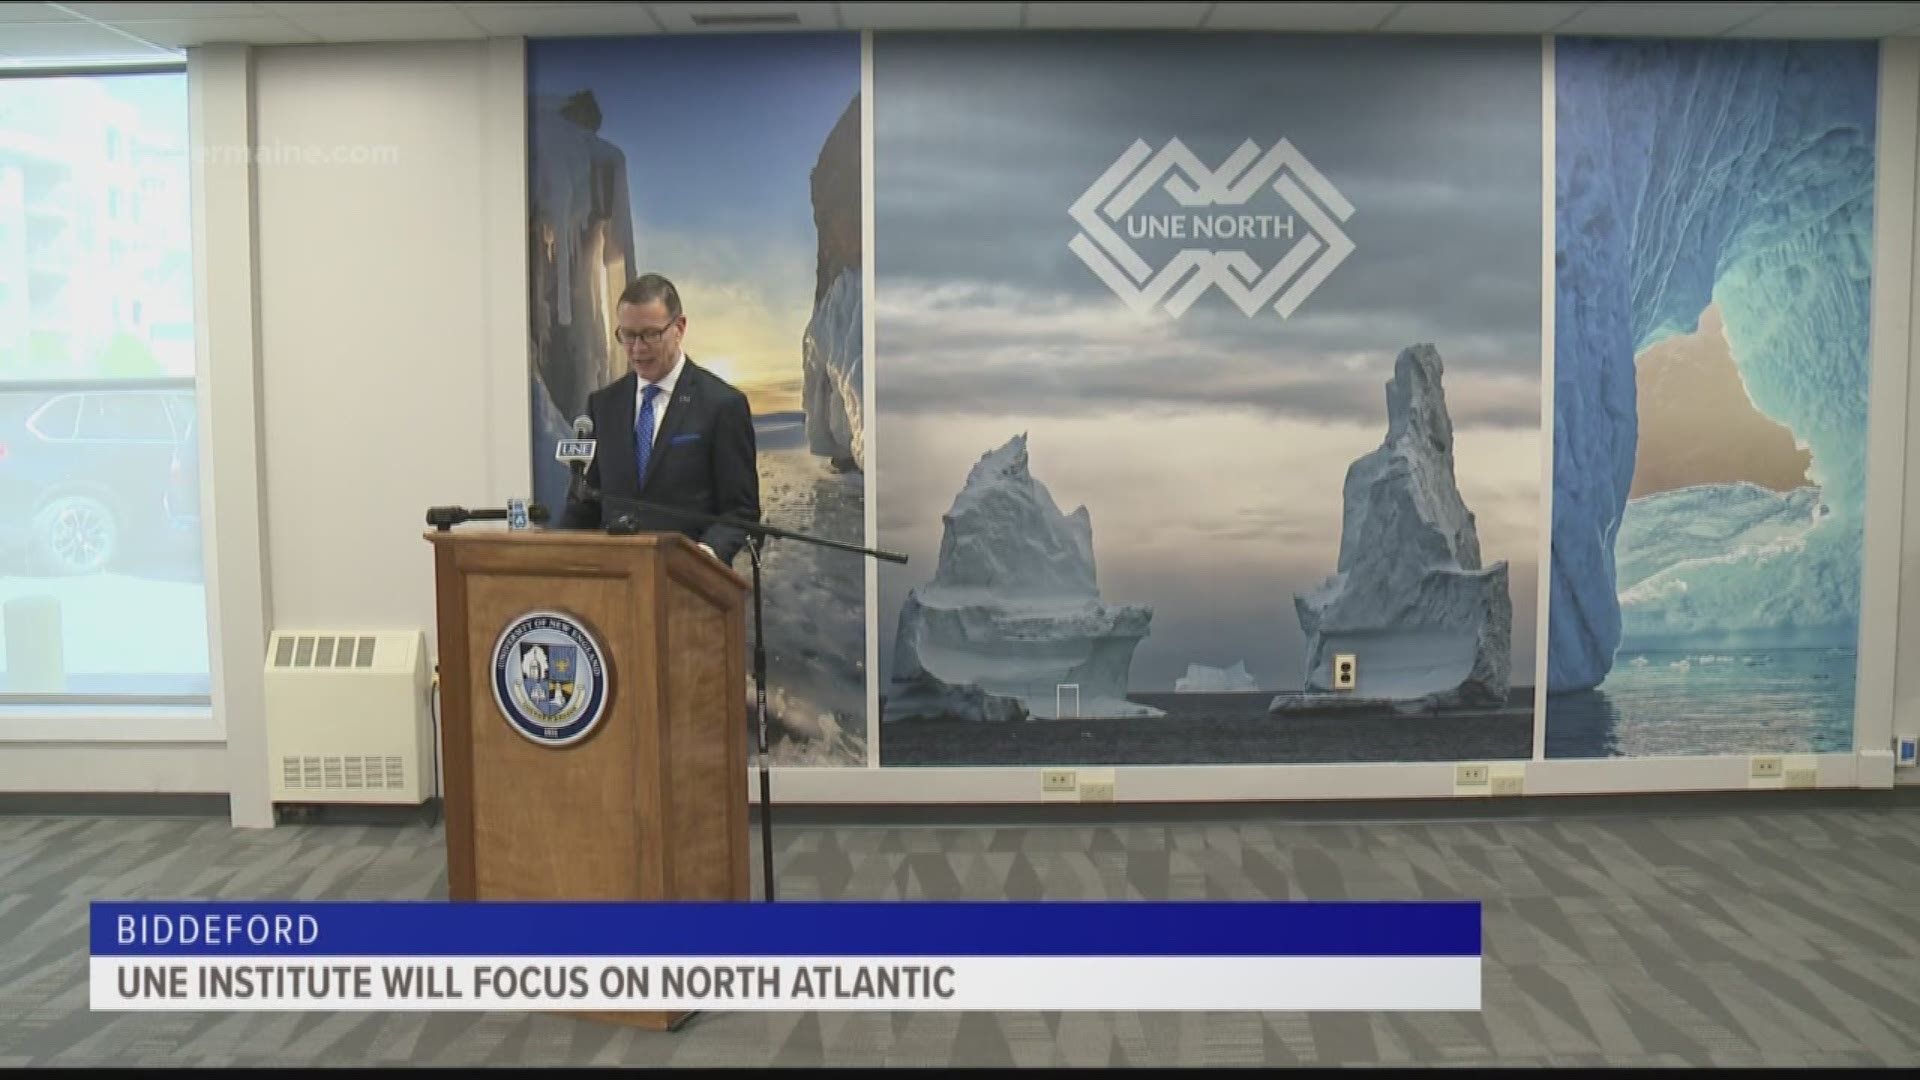 UNE institute will focus on North Atlantic